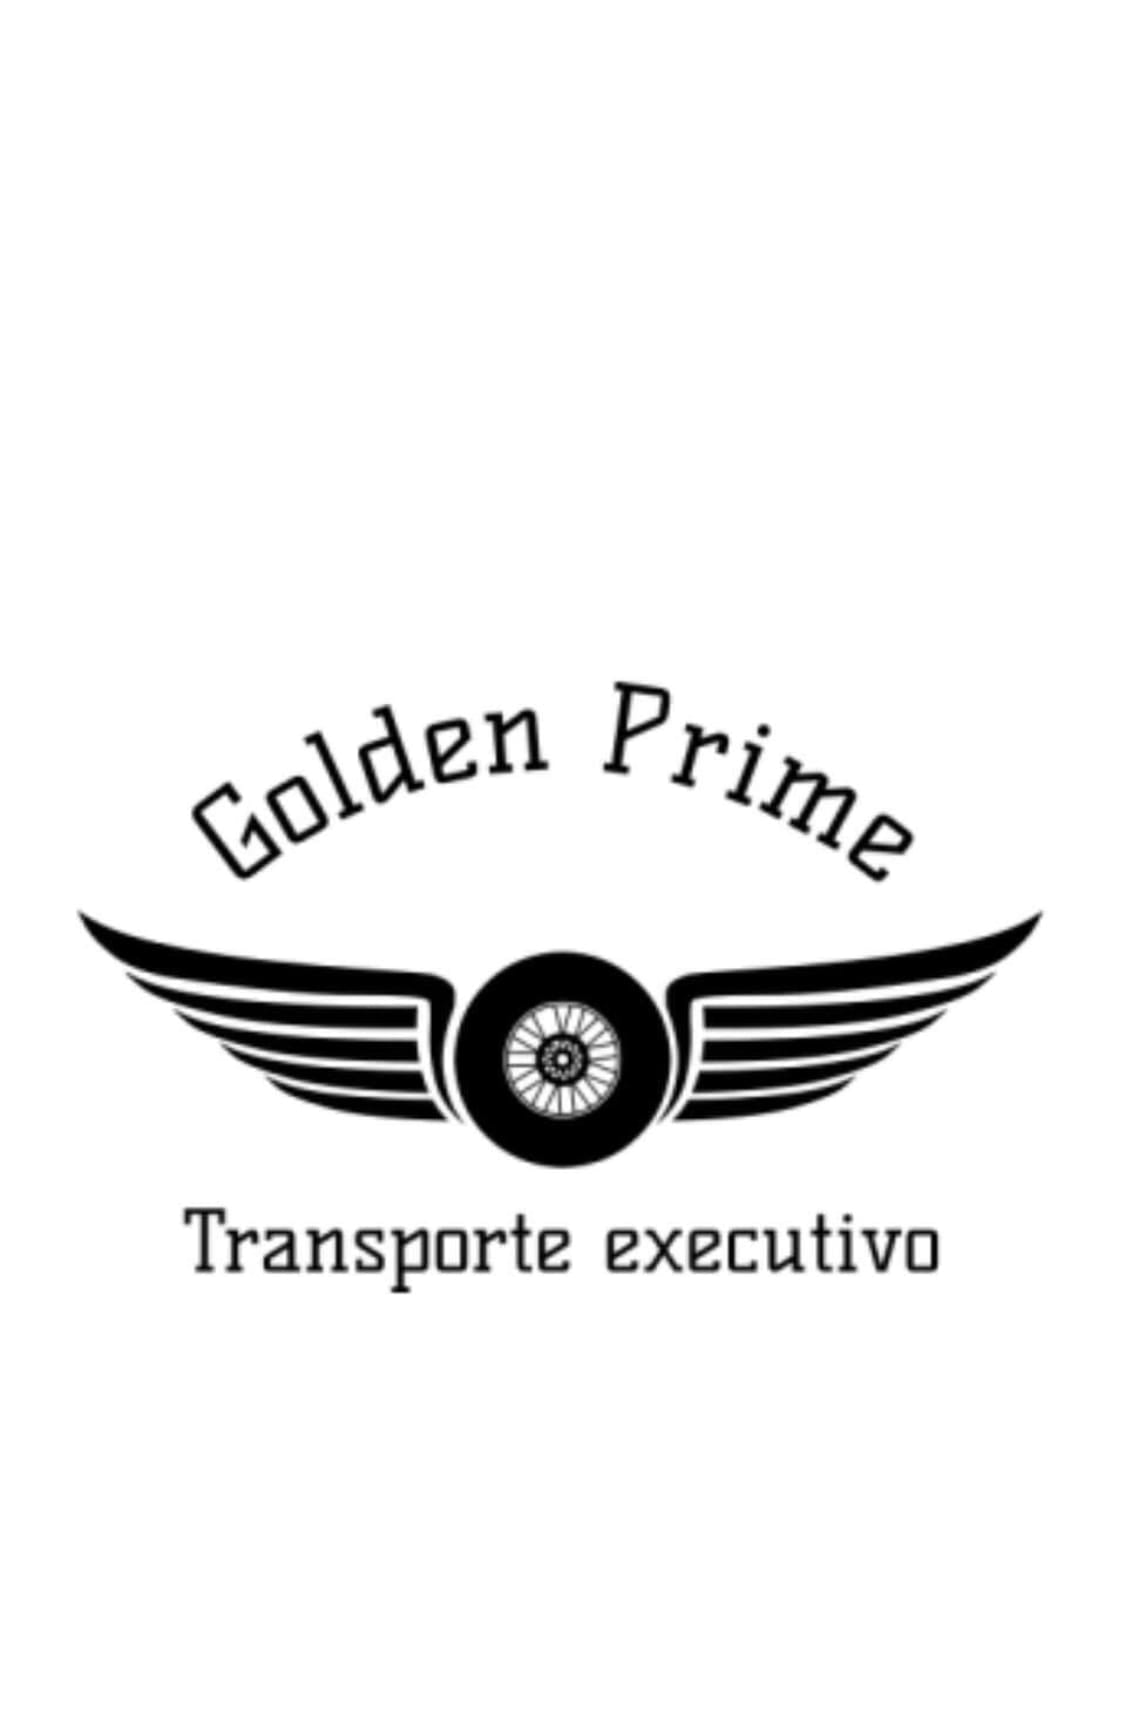 Golden Prime Transportes